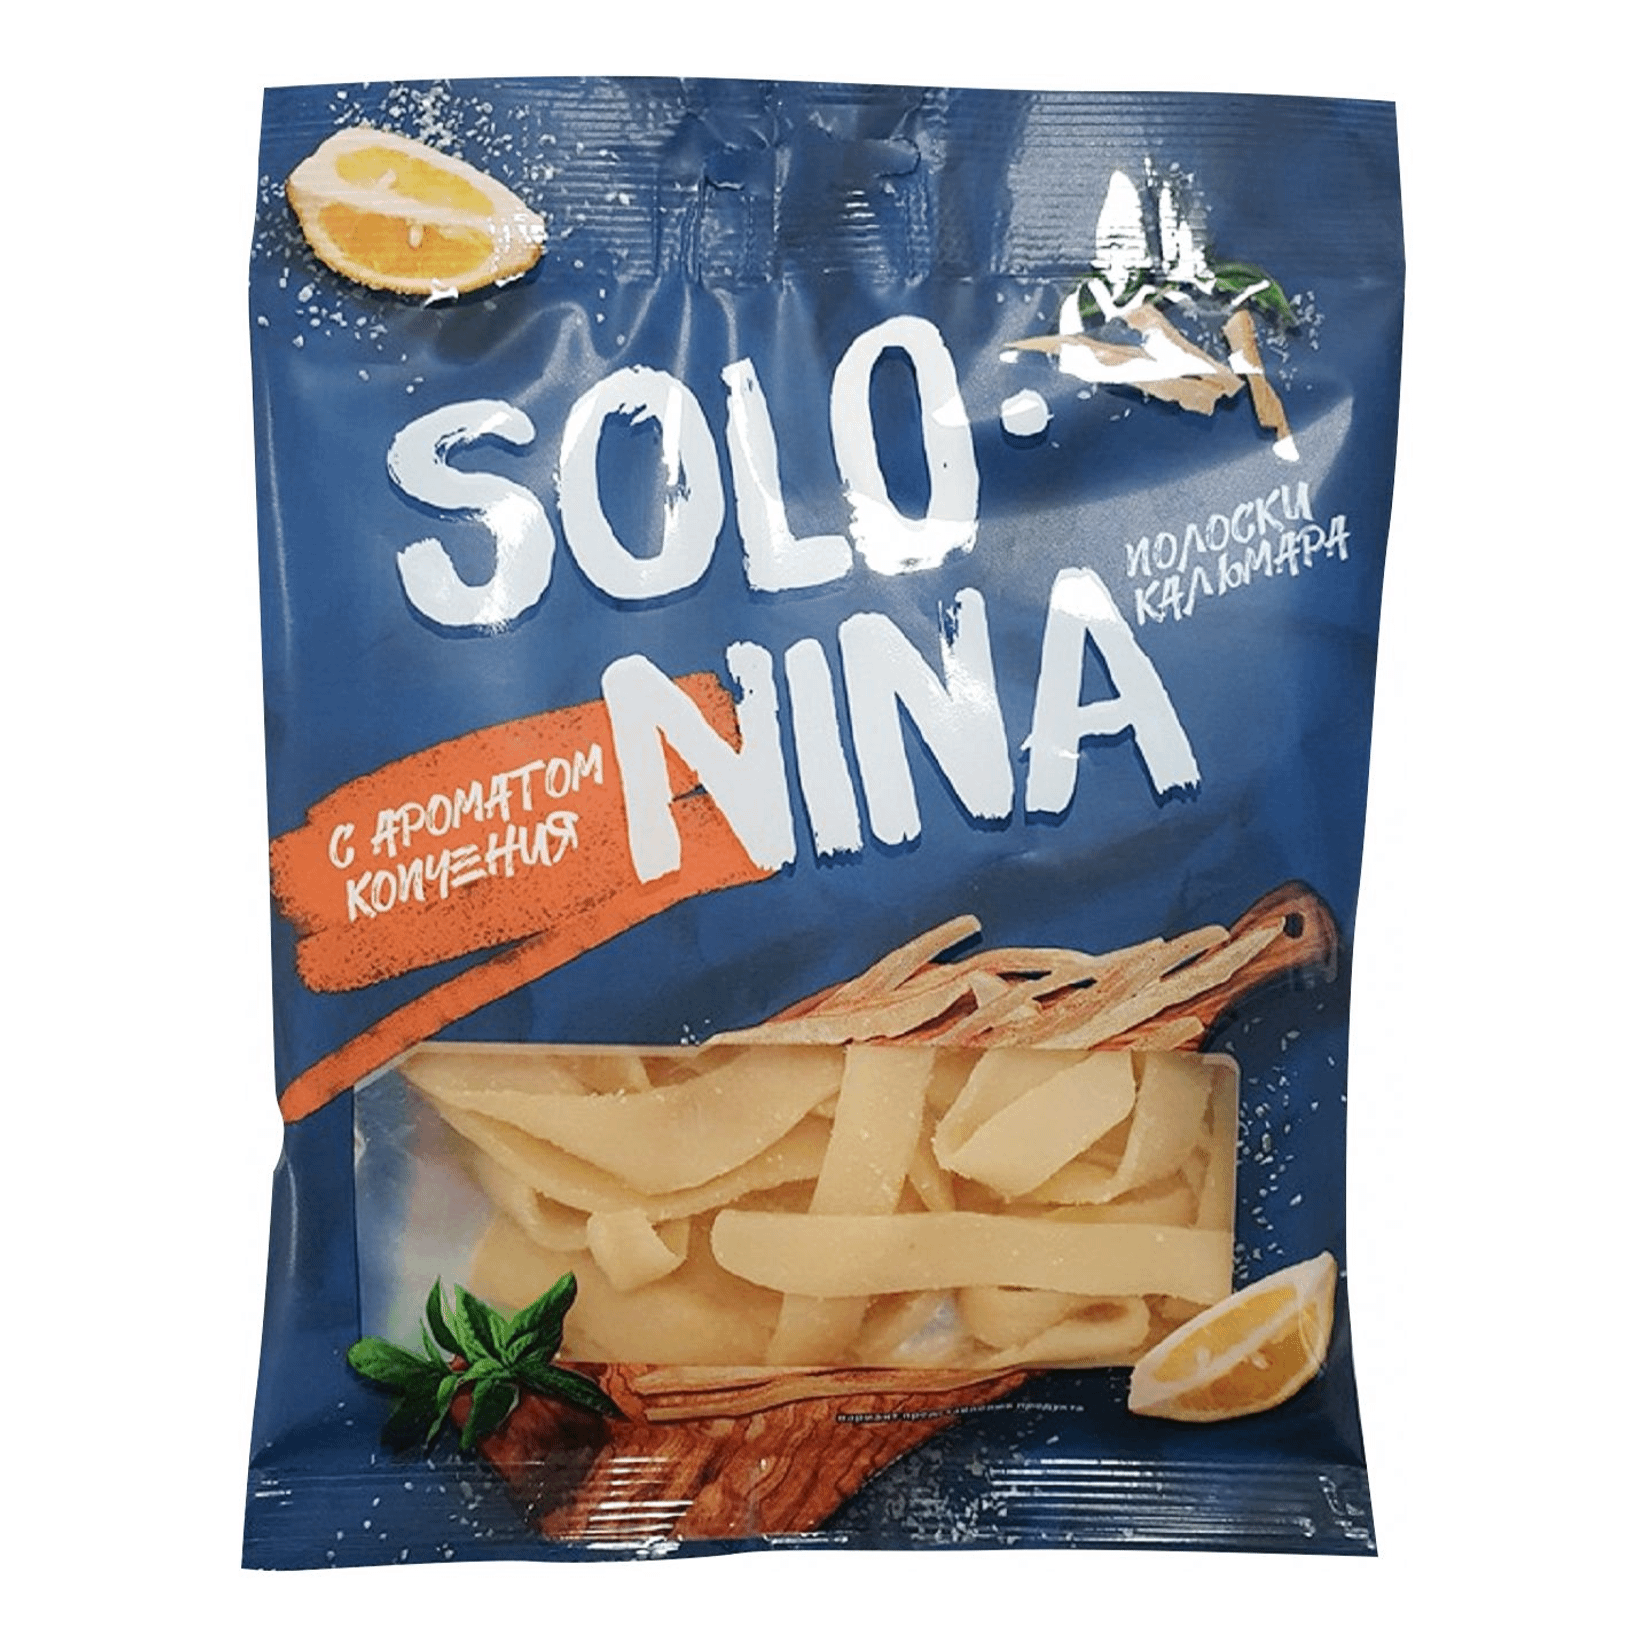 Кальмар Solo Nina сушено-вяленый с ароматом копчения полоски 60 г